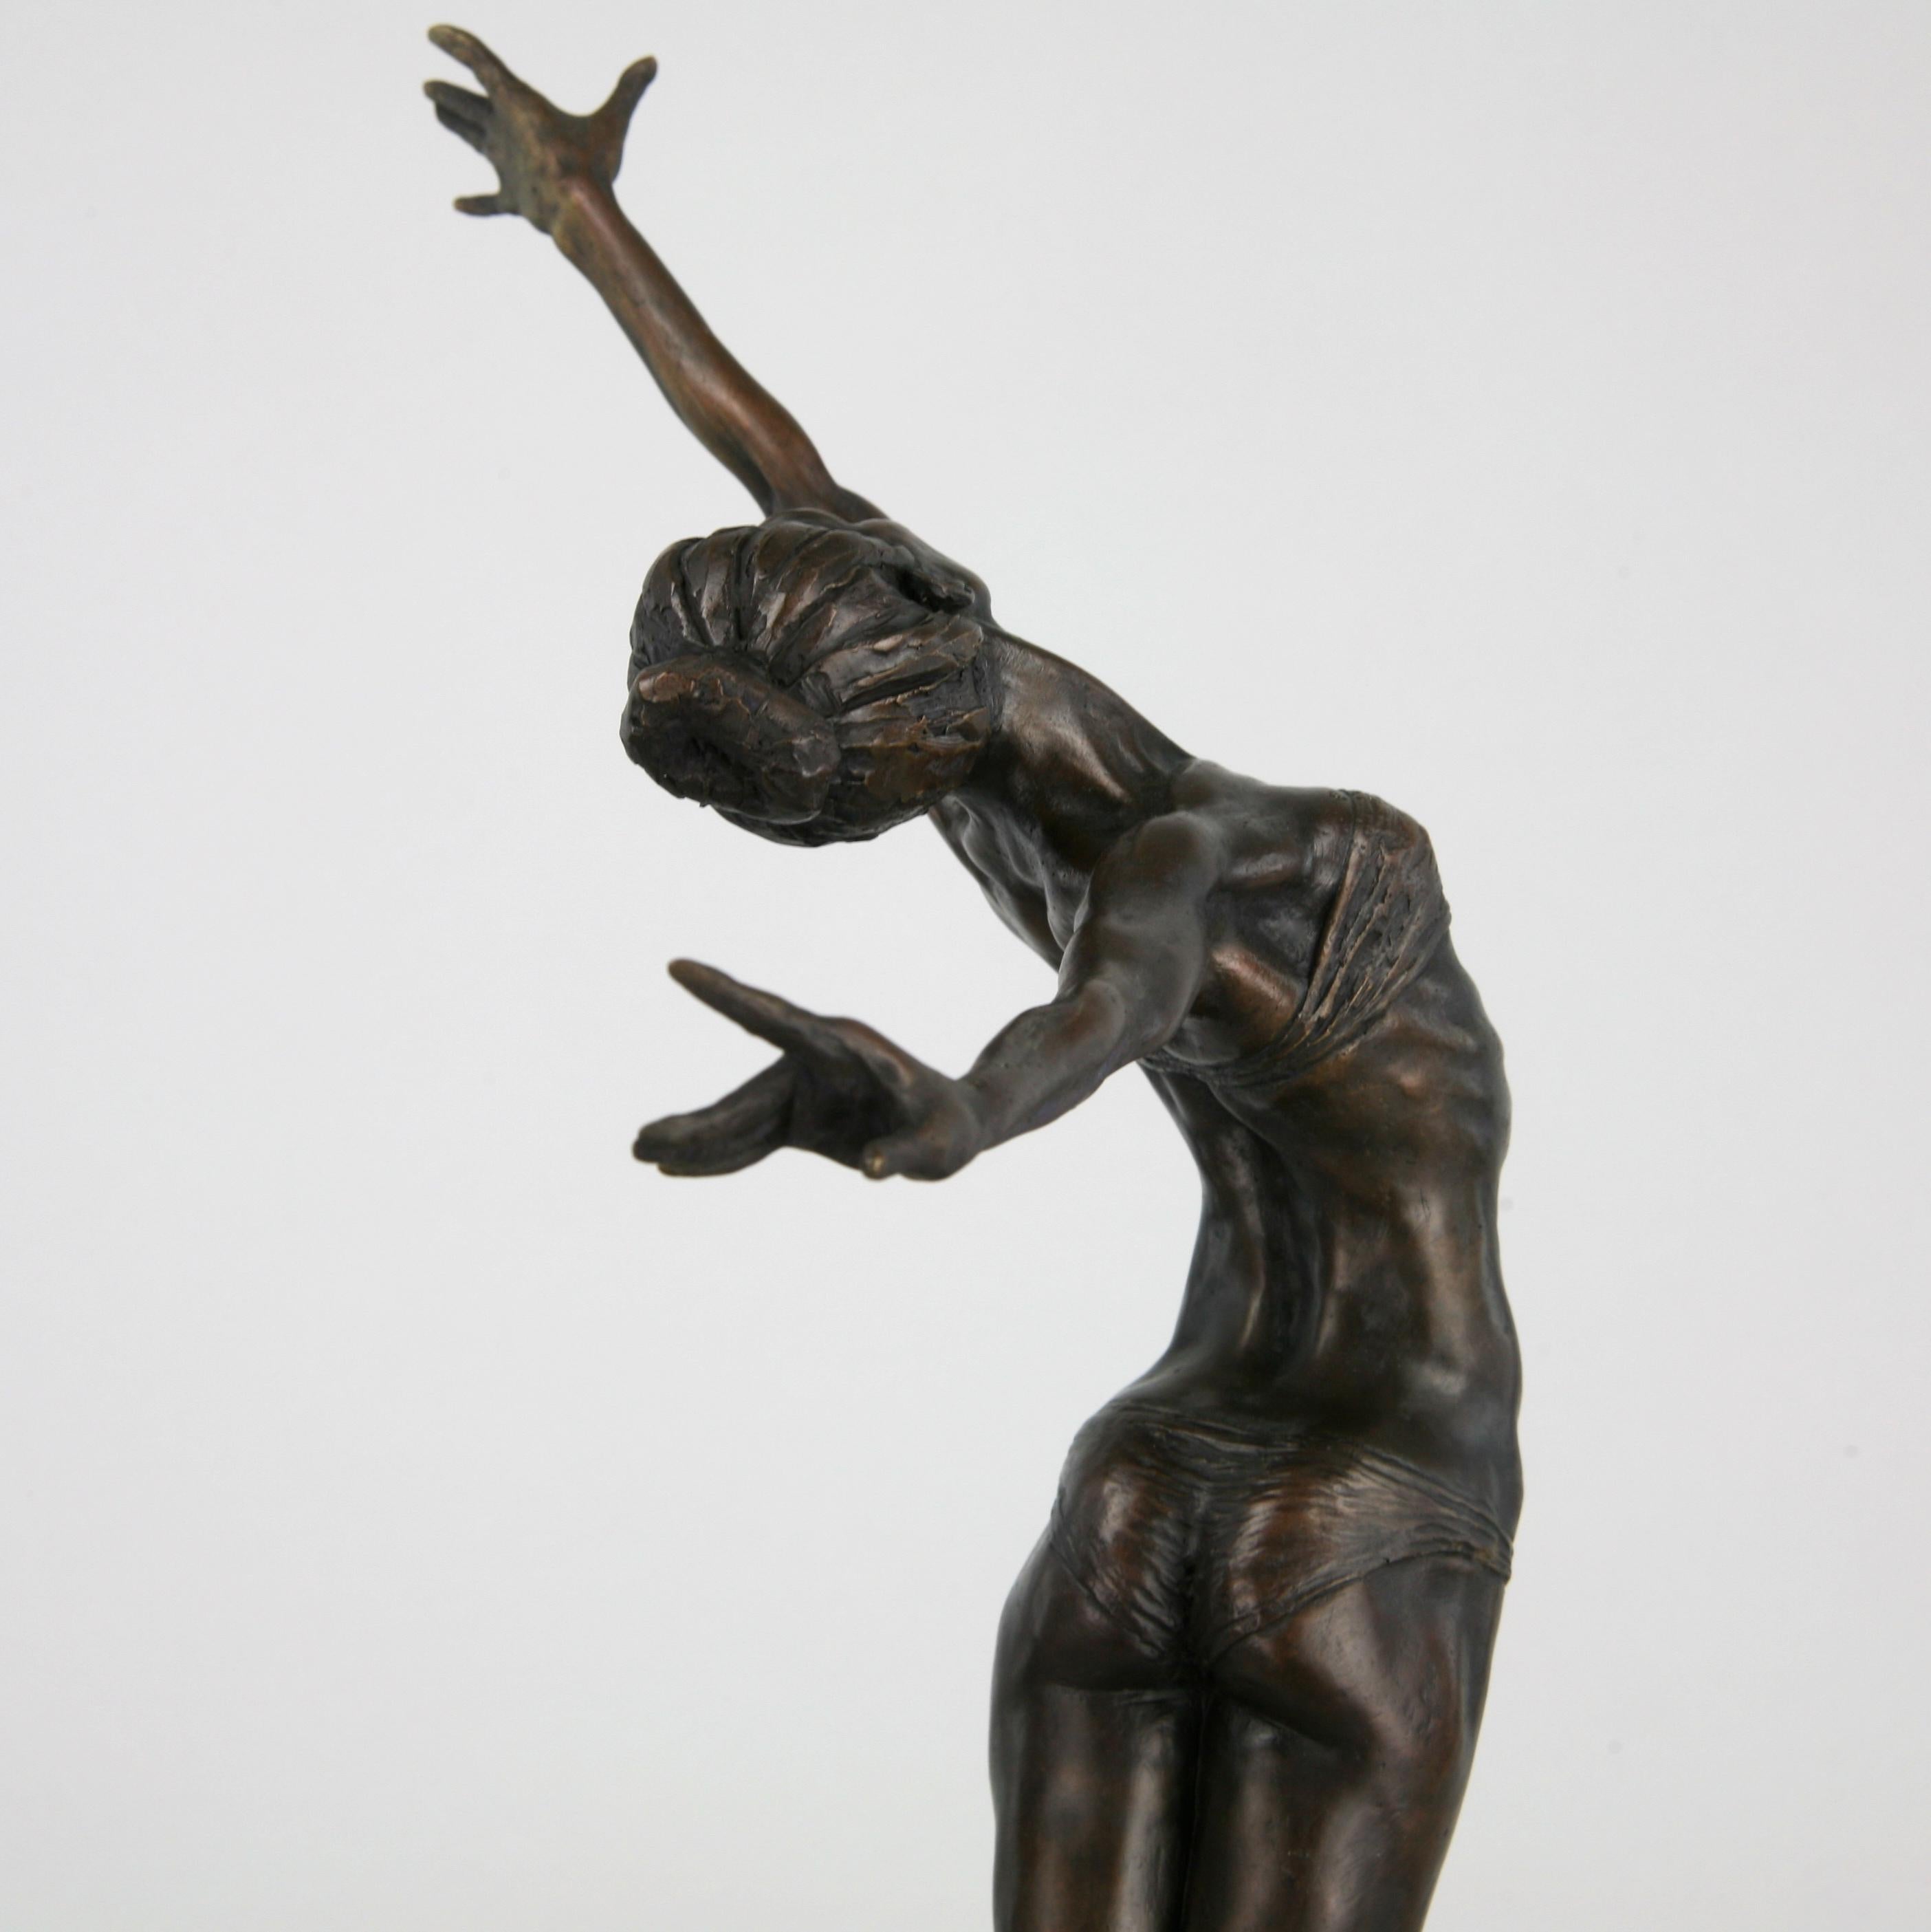 Pole Dancer-original nude figurative bronze sculpture-artwork-contemporary Art For Sale 5